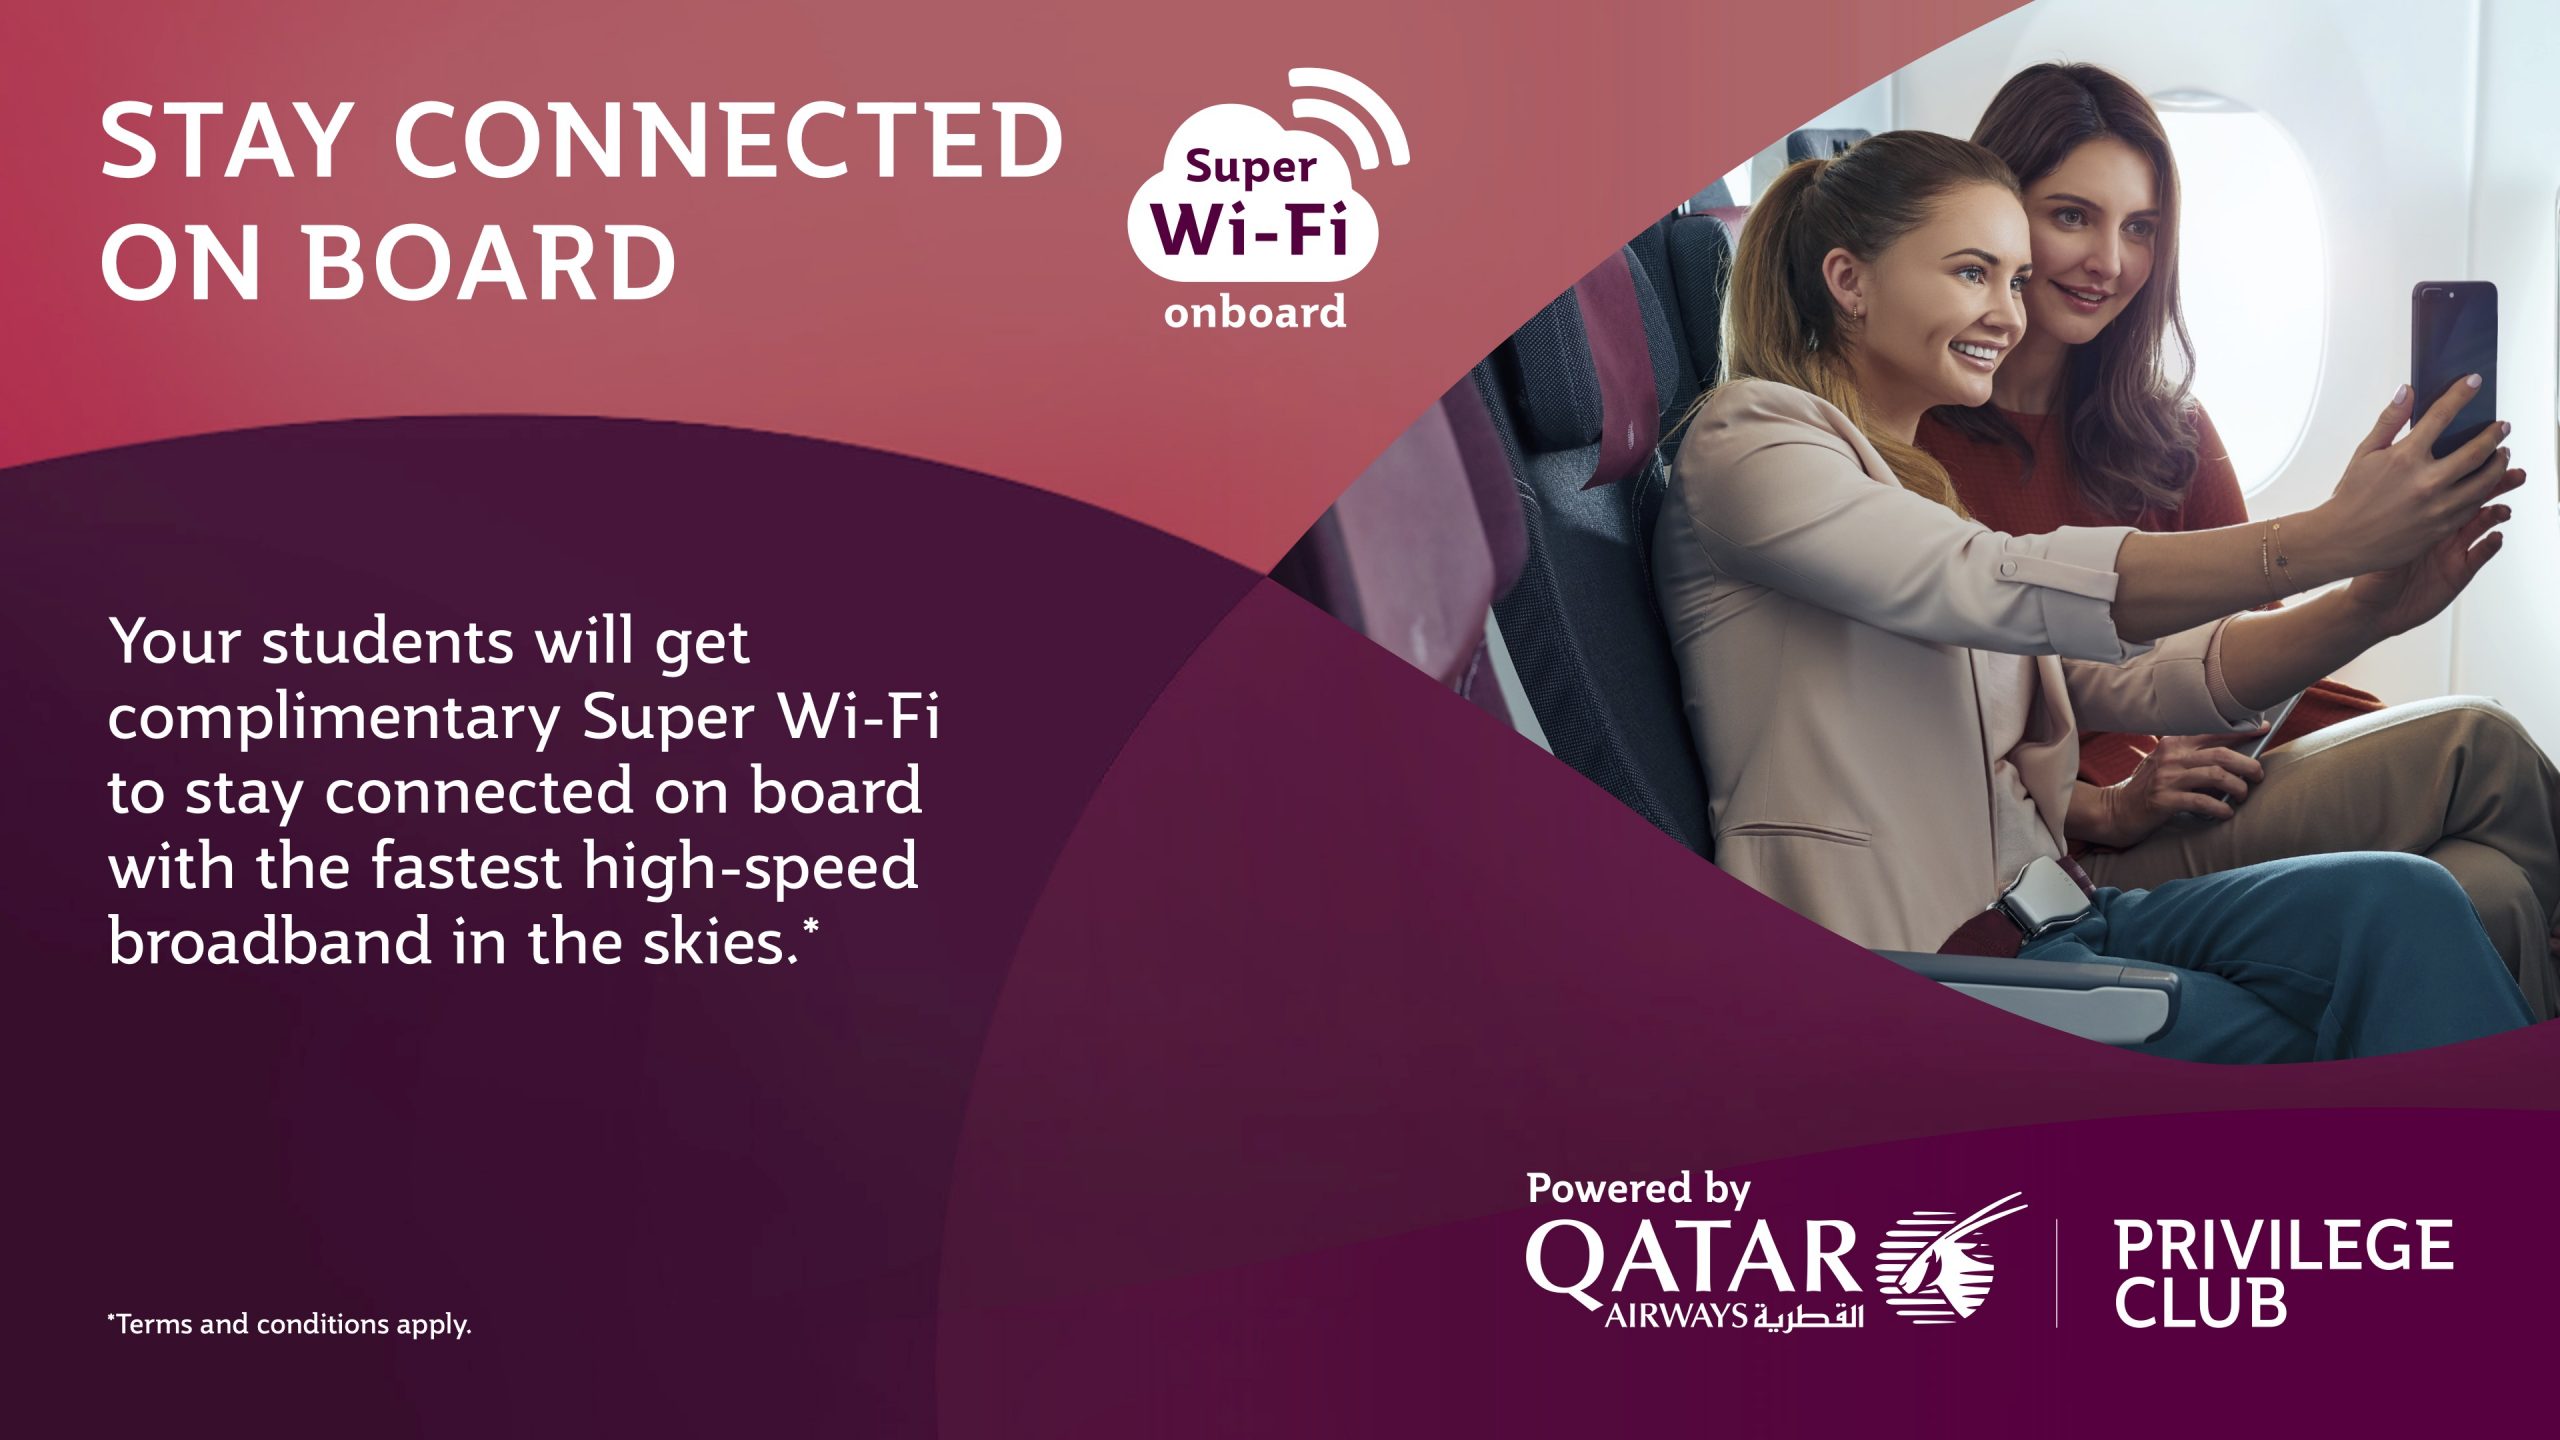 Super WiFi on board